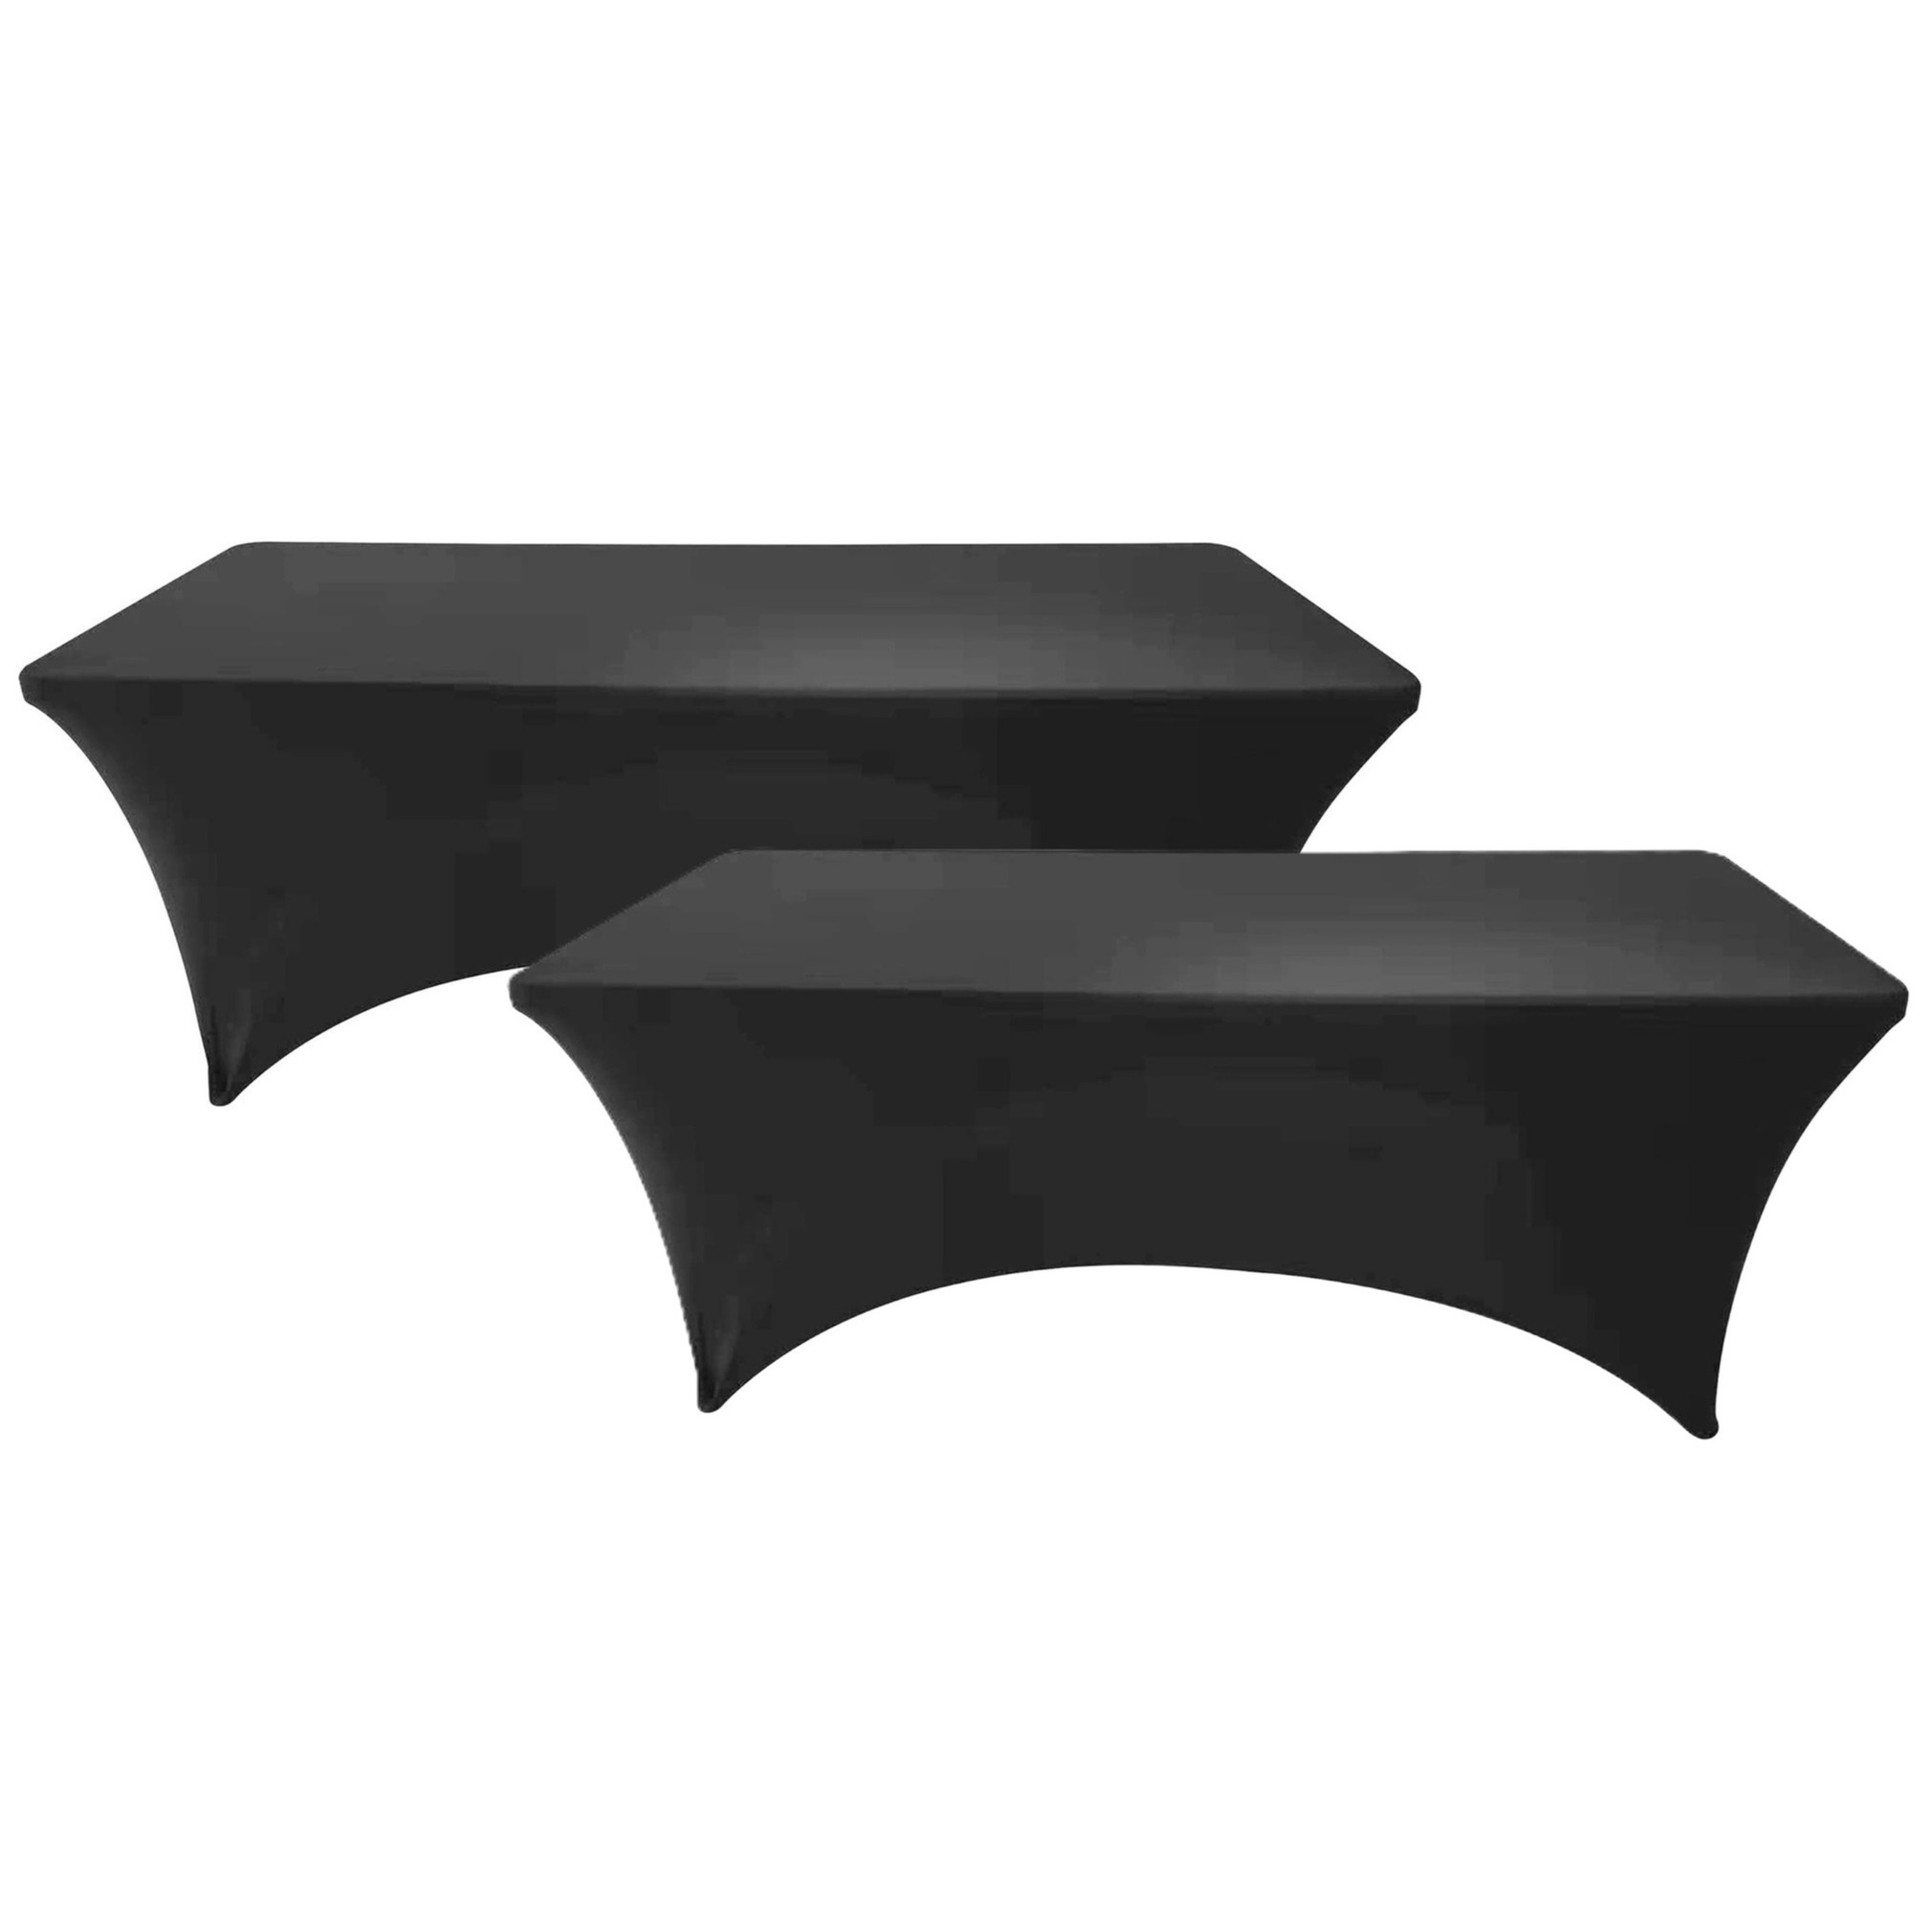 Sunnydays nette afdekhoes voor langwerpige tafel - 2x - zwart - spandex elastiek - 180 x 75 x 74 cm -